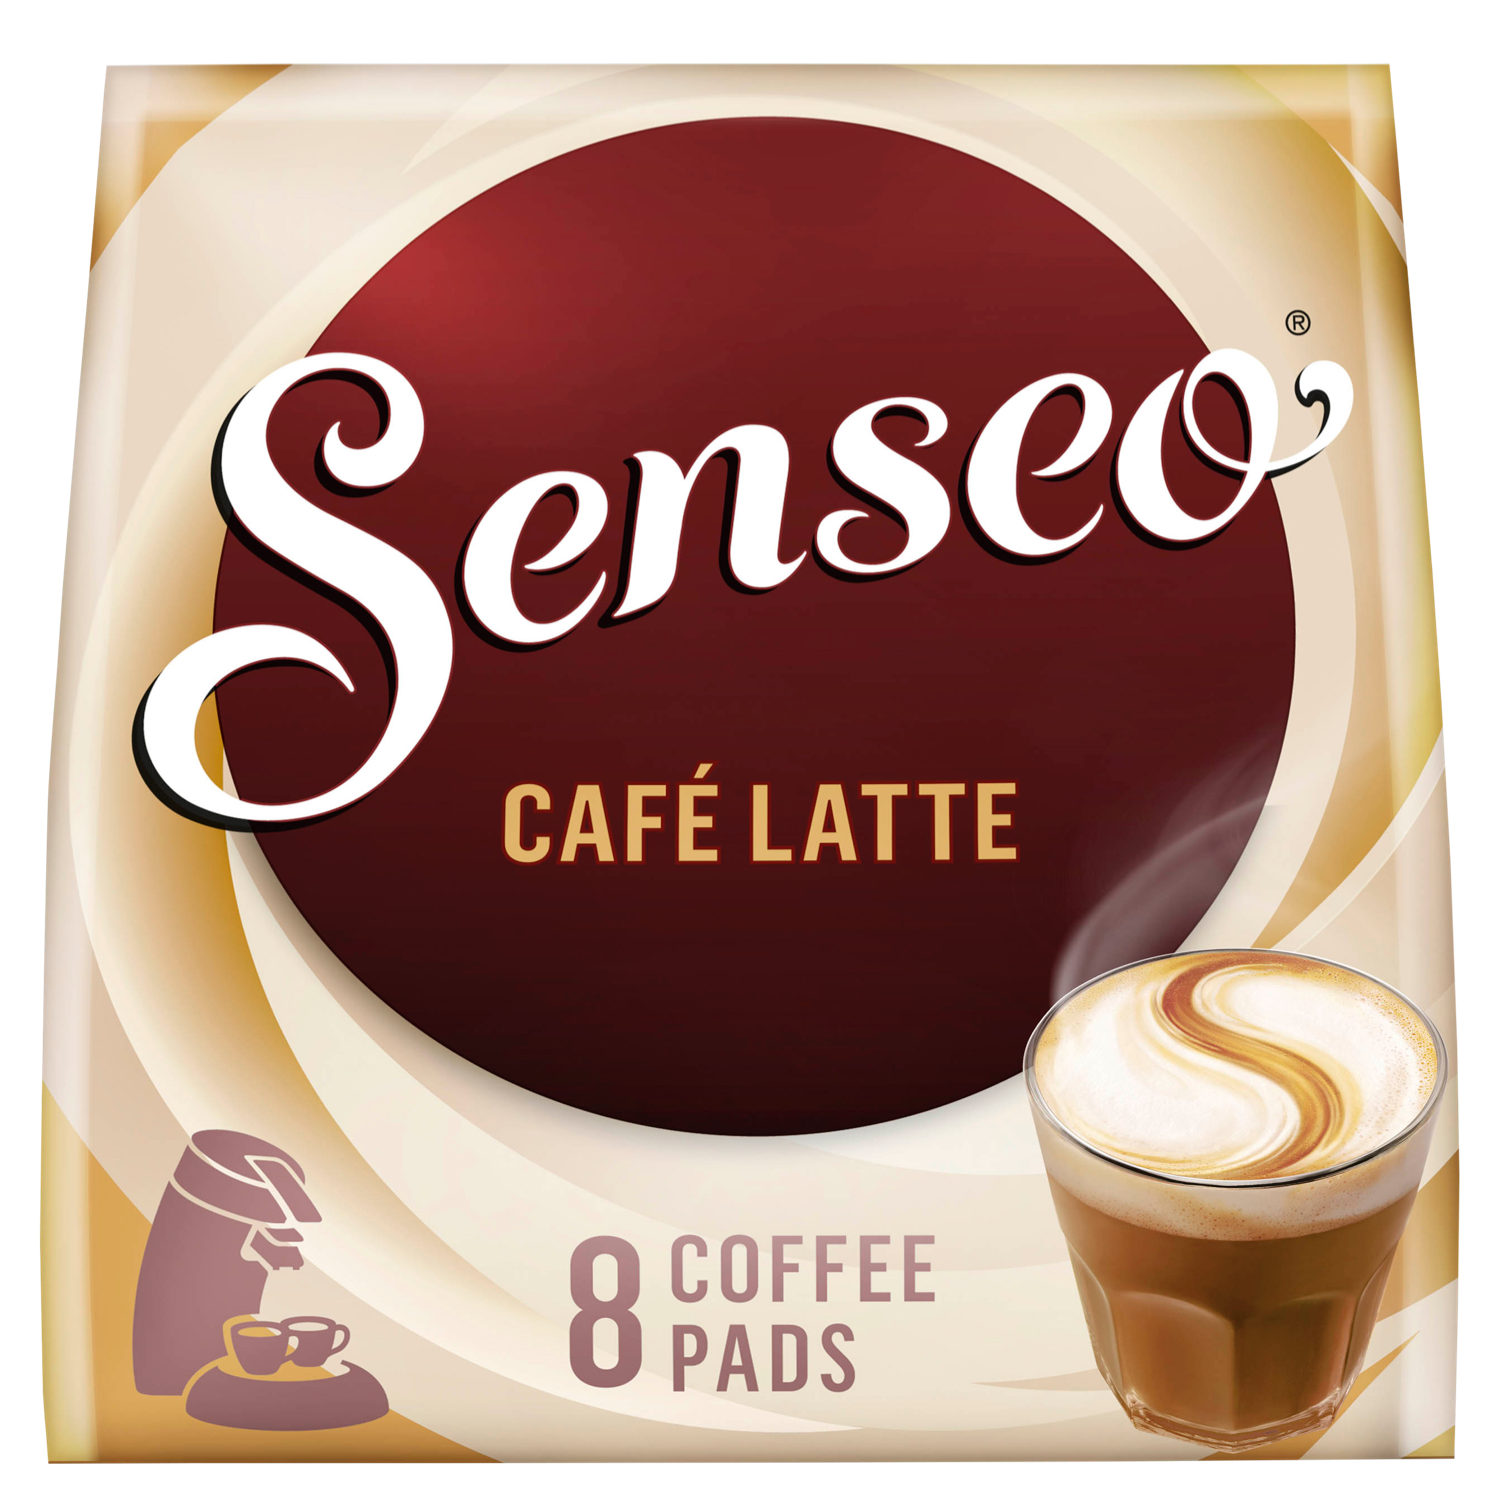 Dag Platteland Ver weg Senseo Café Latte Koffiepads bestellen? DekaMarkt